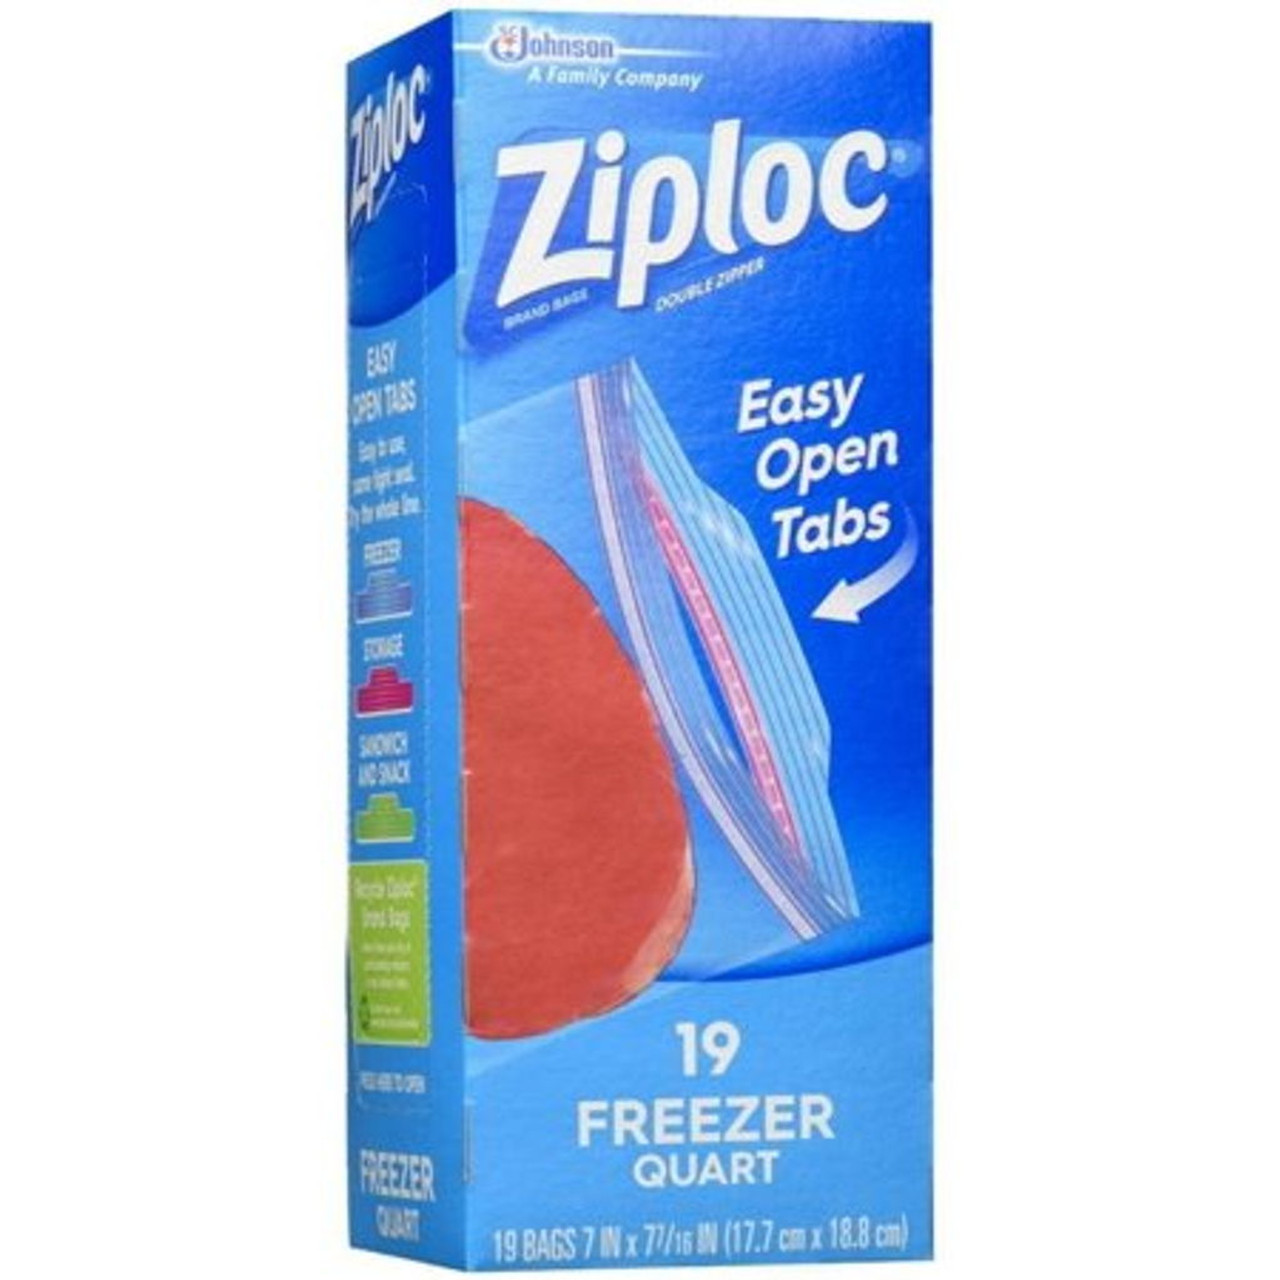 Ziploc Freezer Quart Bags 38 Ct.